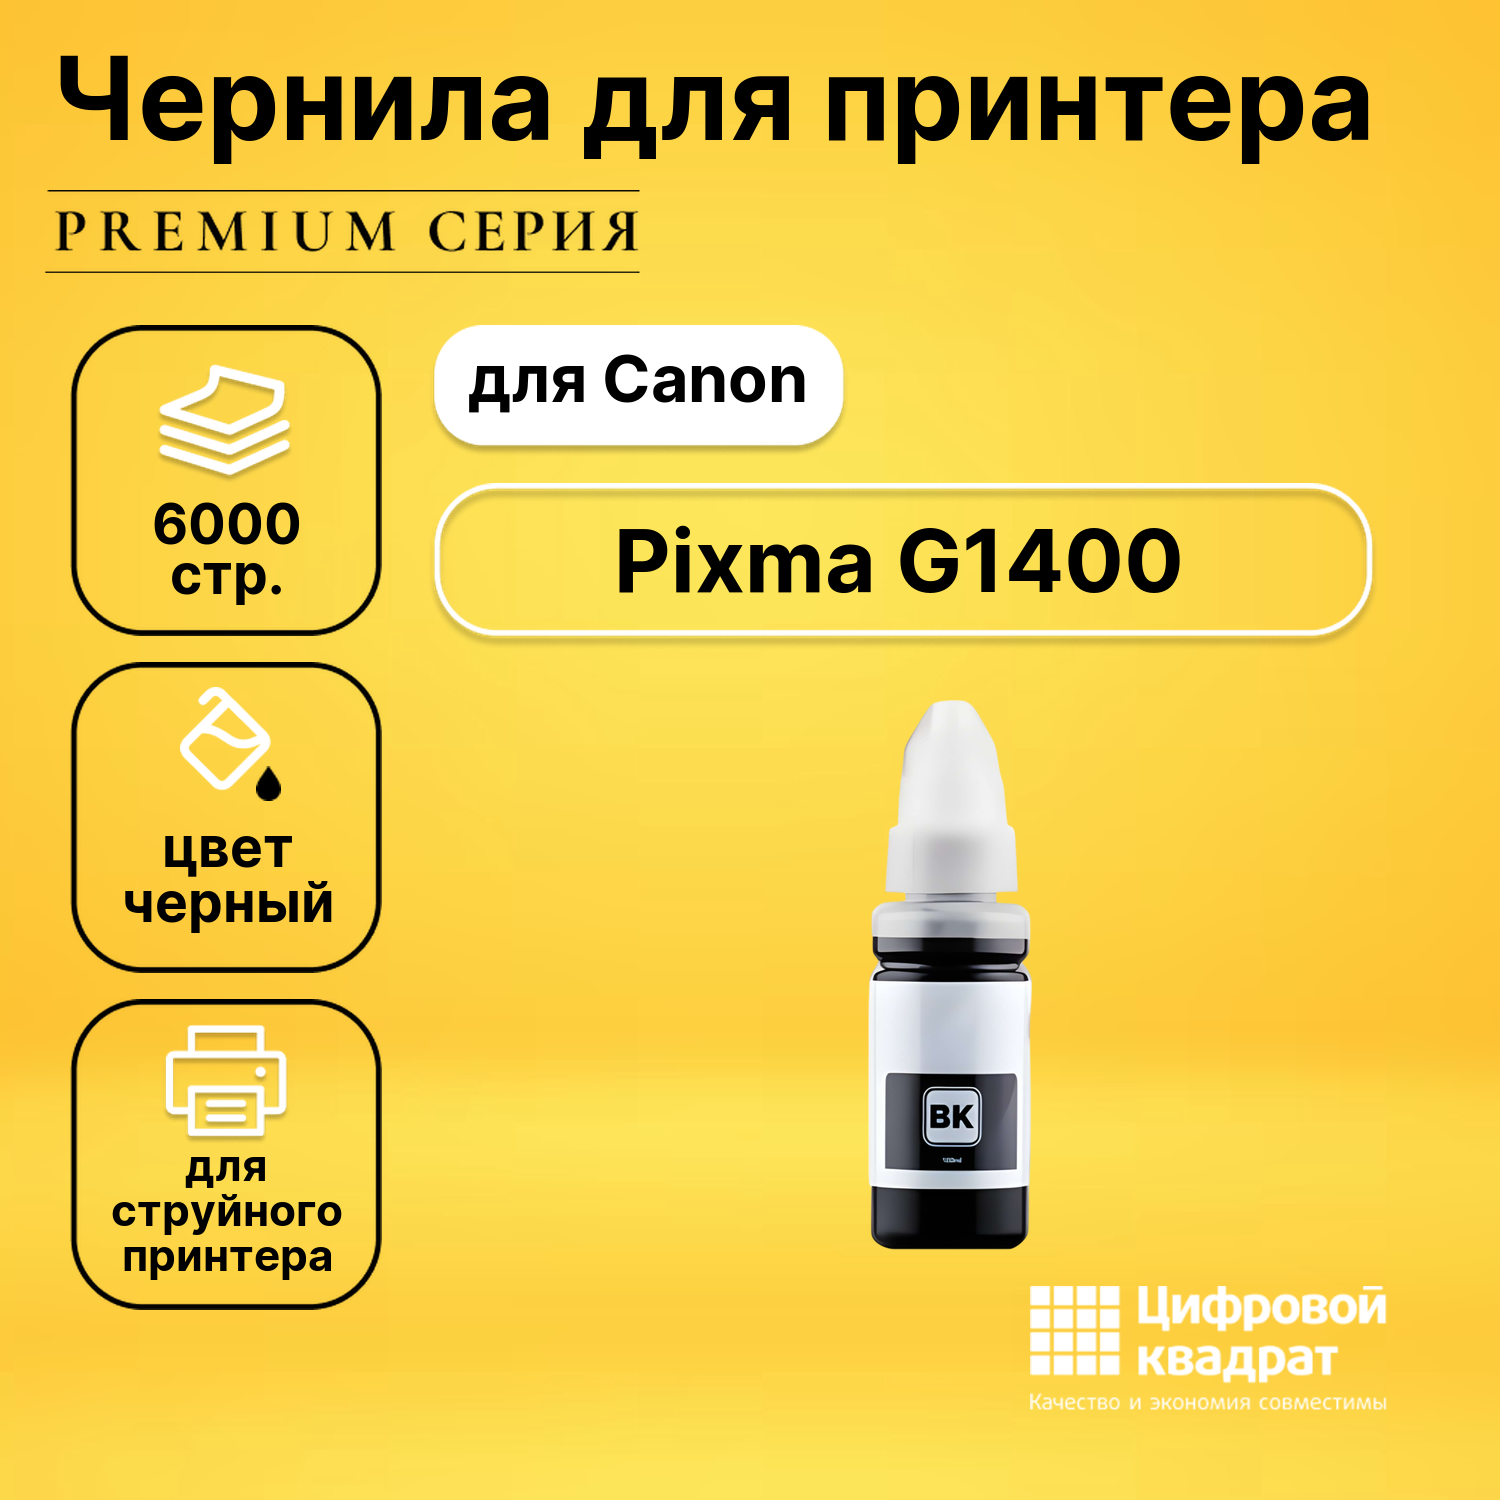 Чернила для Canon Pixma G1400 совместимые